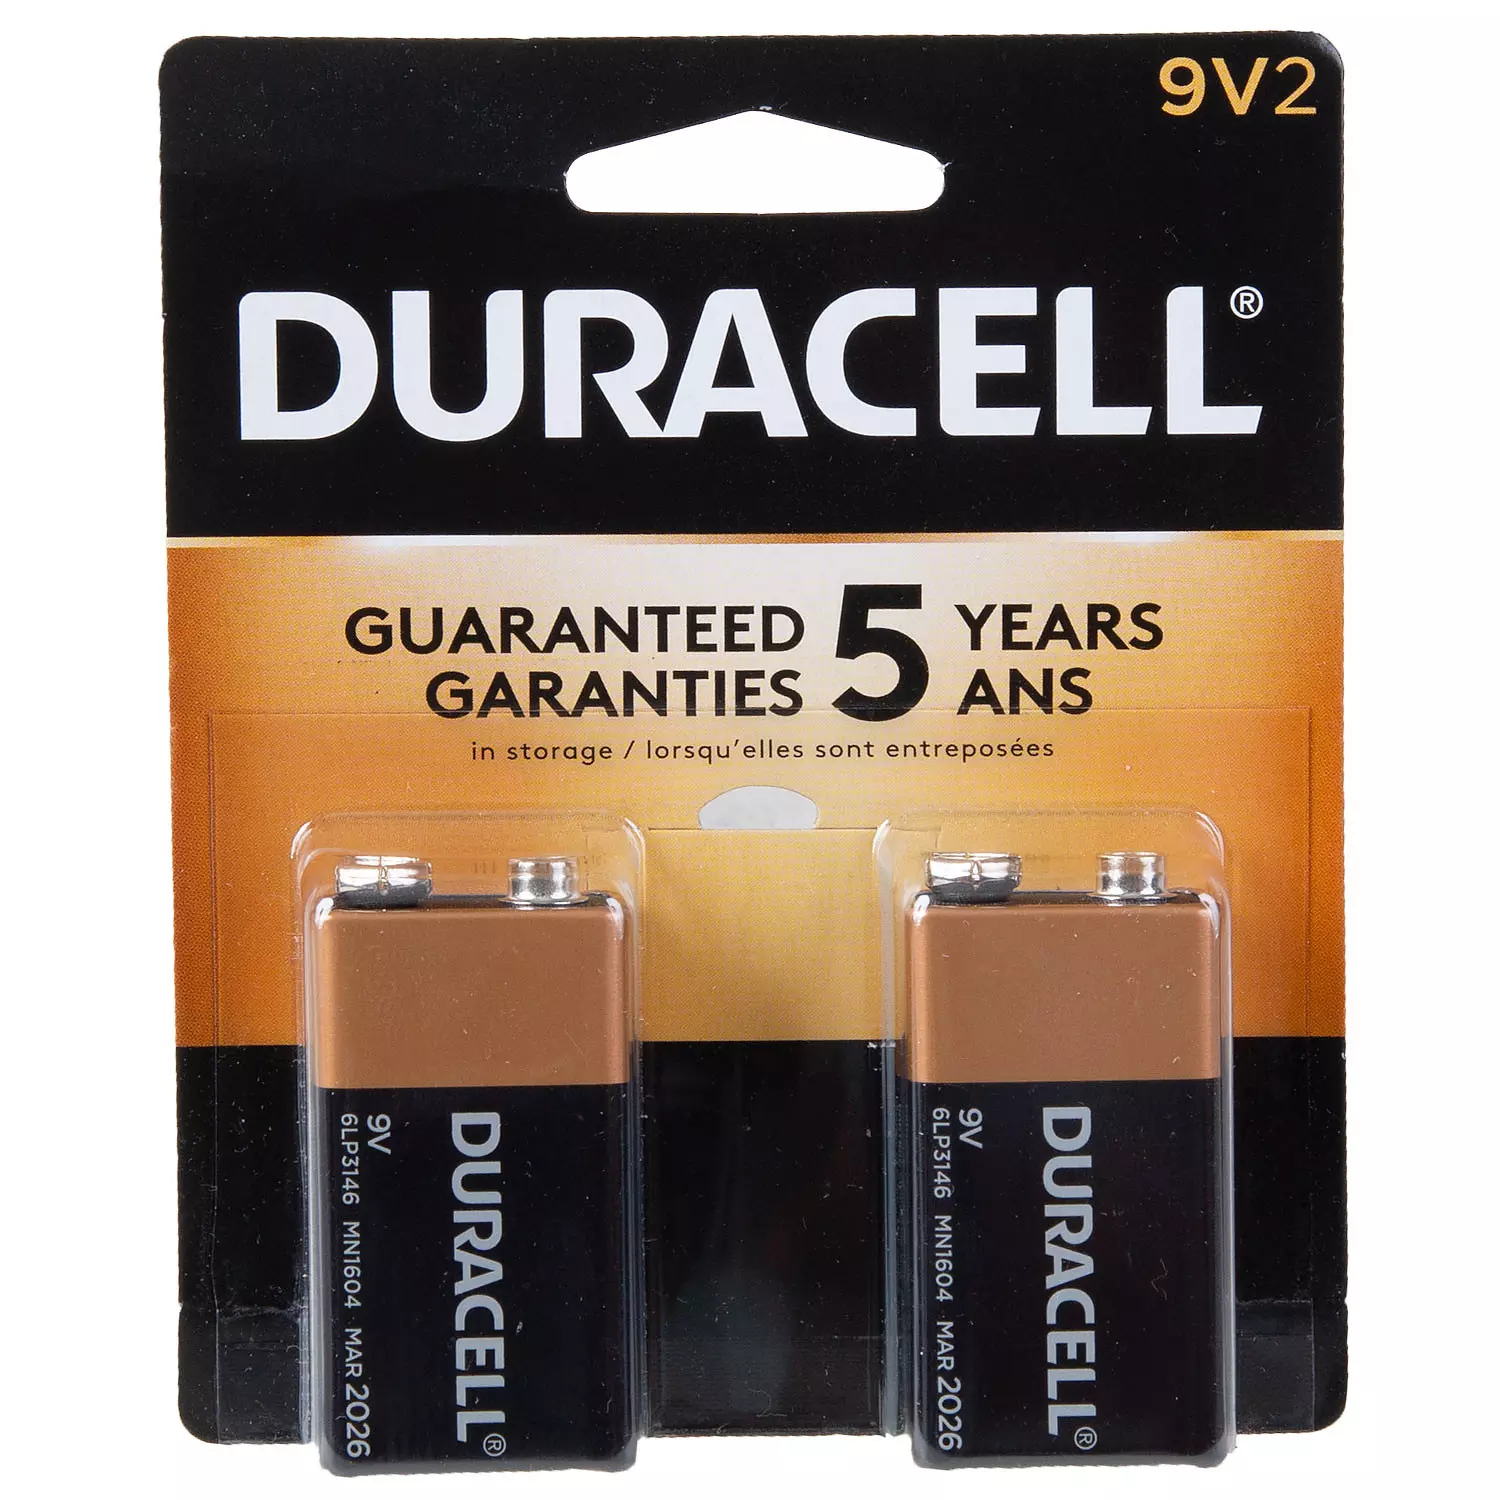 Duracell - Alkaline 9V batteries, pk. of 2